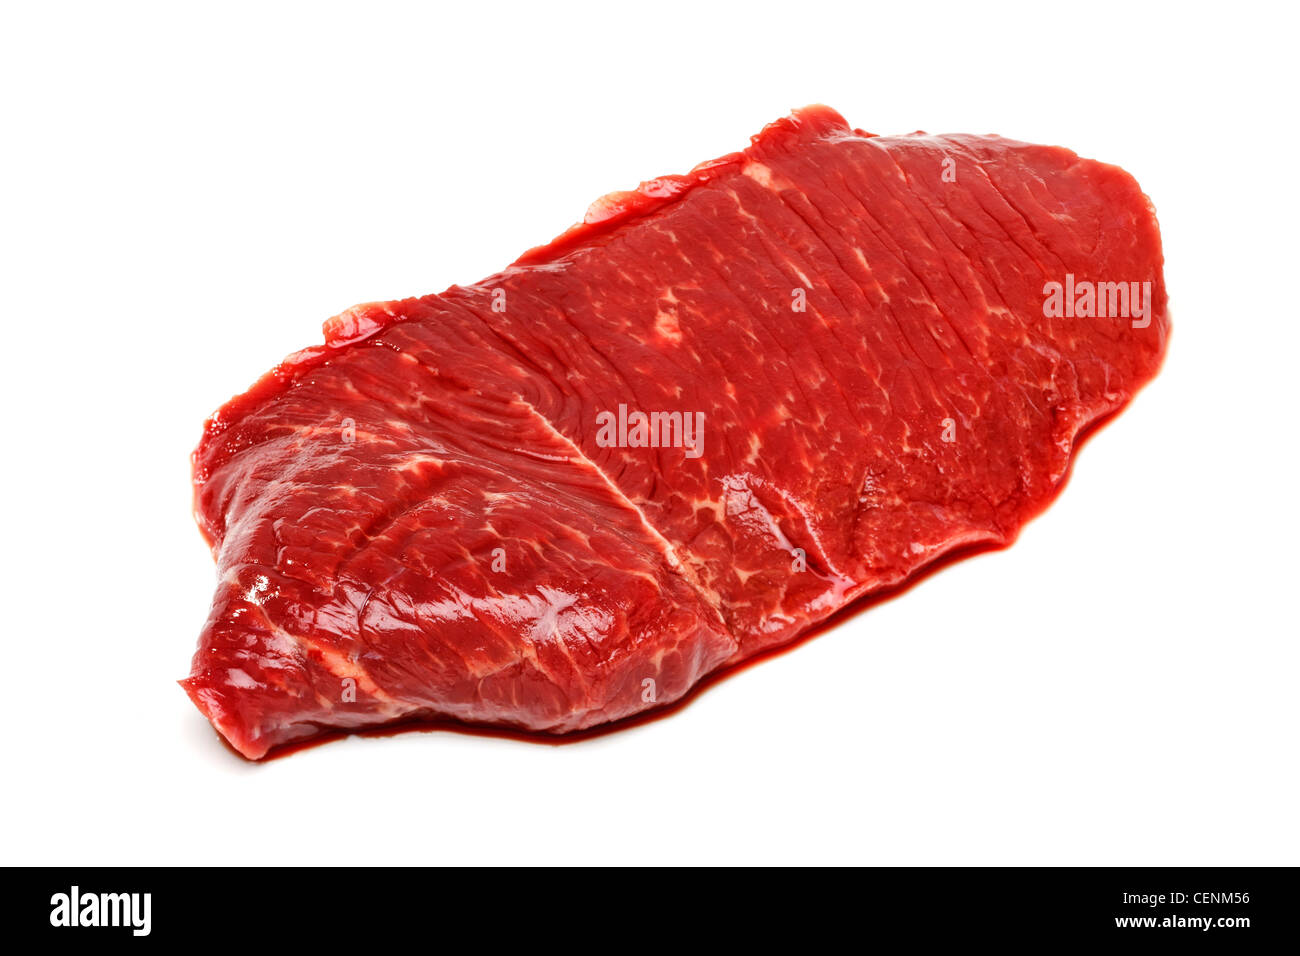 Raw steak on white background Stock Photo